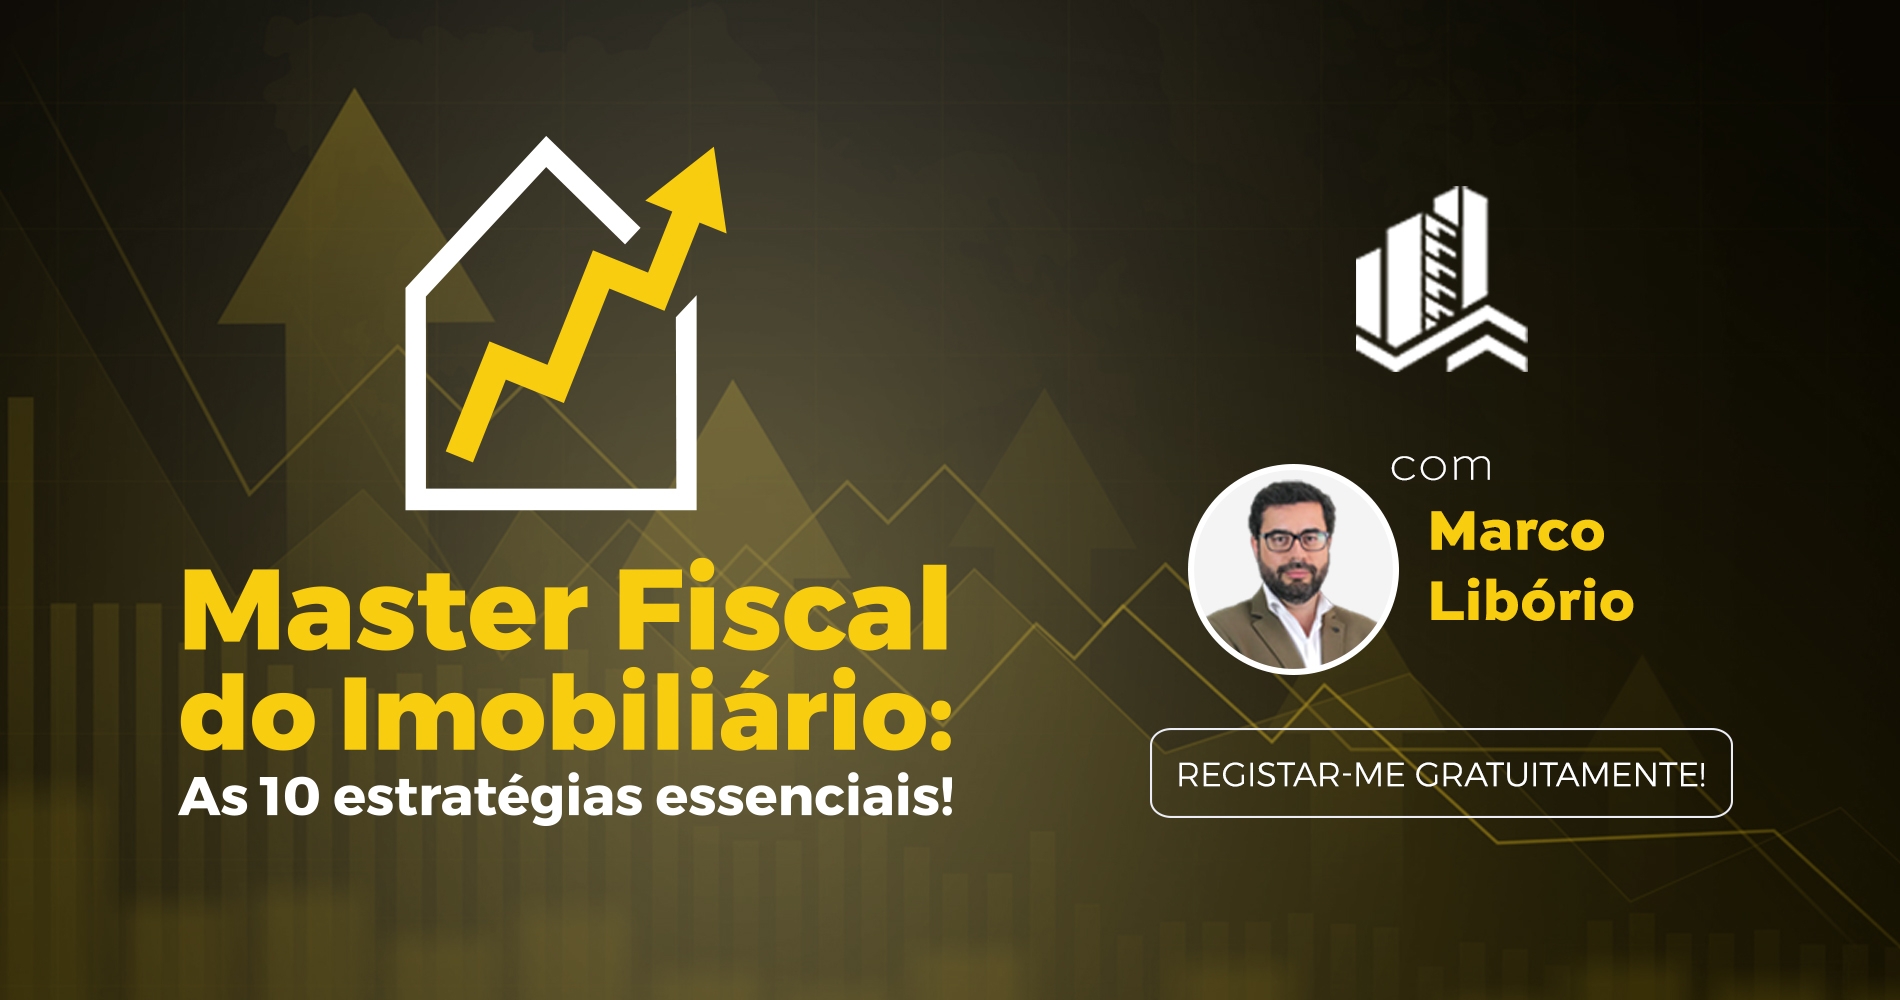 Curso online gratuito: “Master Fiscal do Imobiliário: As 10 estratégias essenciais!